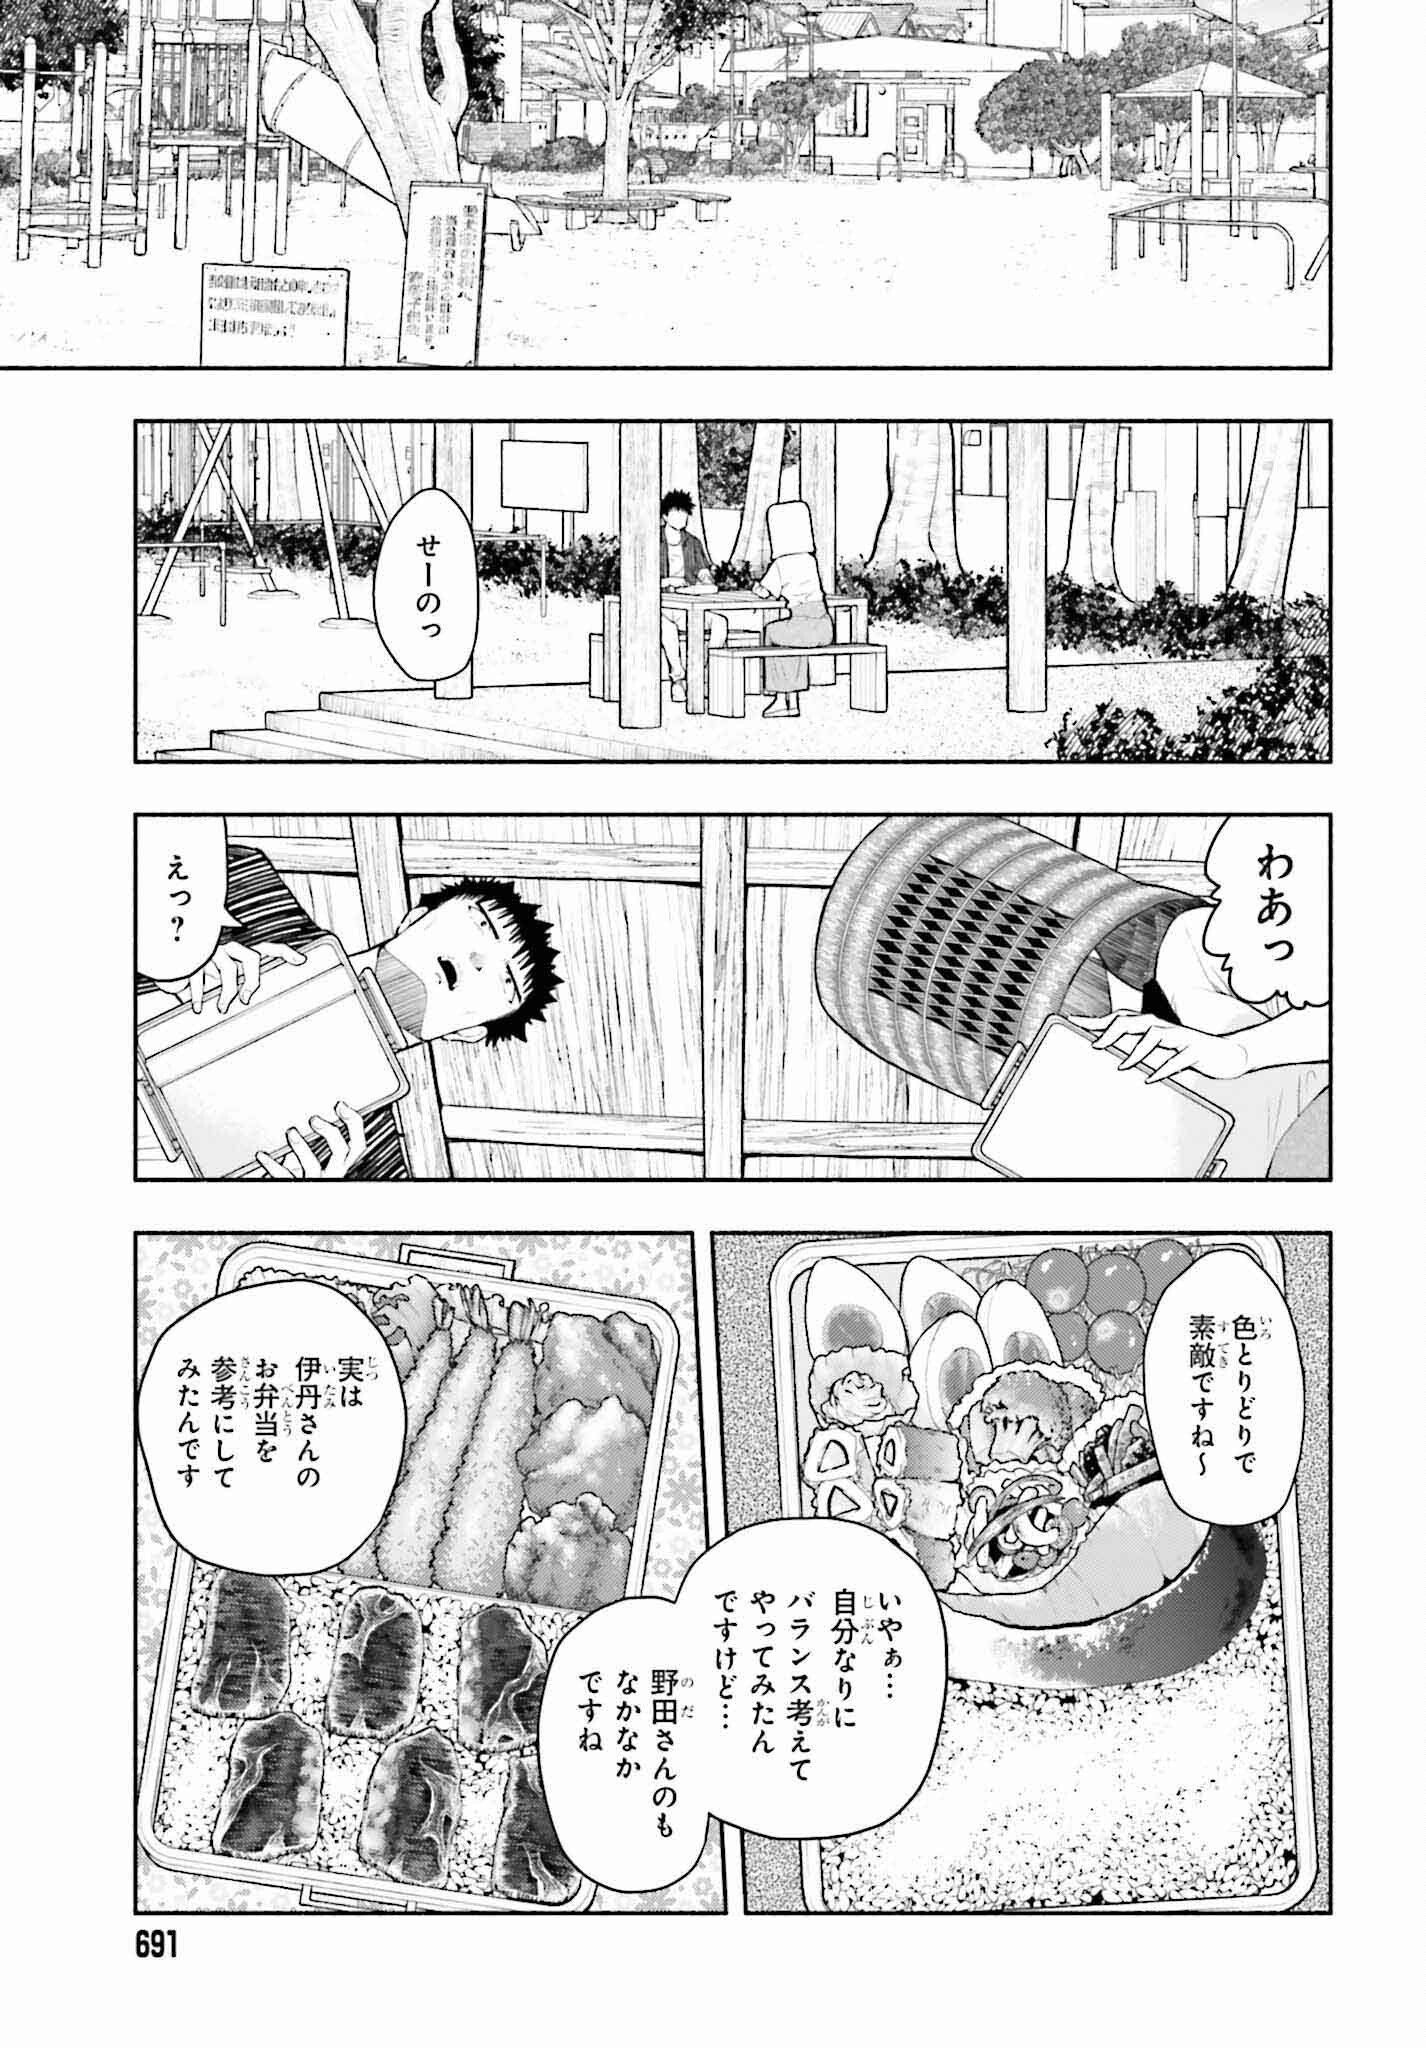 Omiai ni Sugoi Komyushou ga Kita - Chapter 7 - Page 3